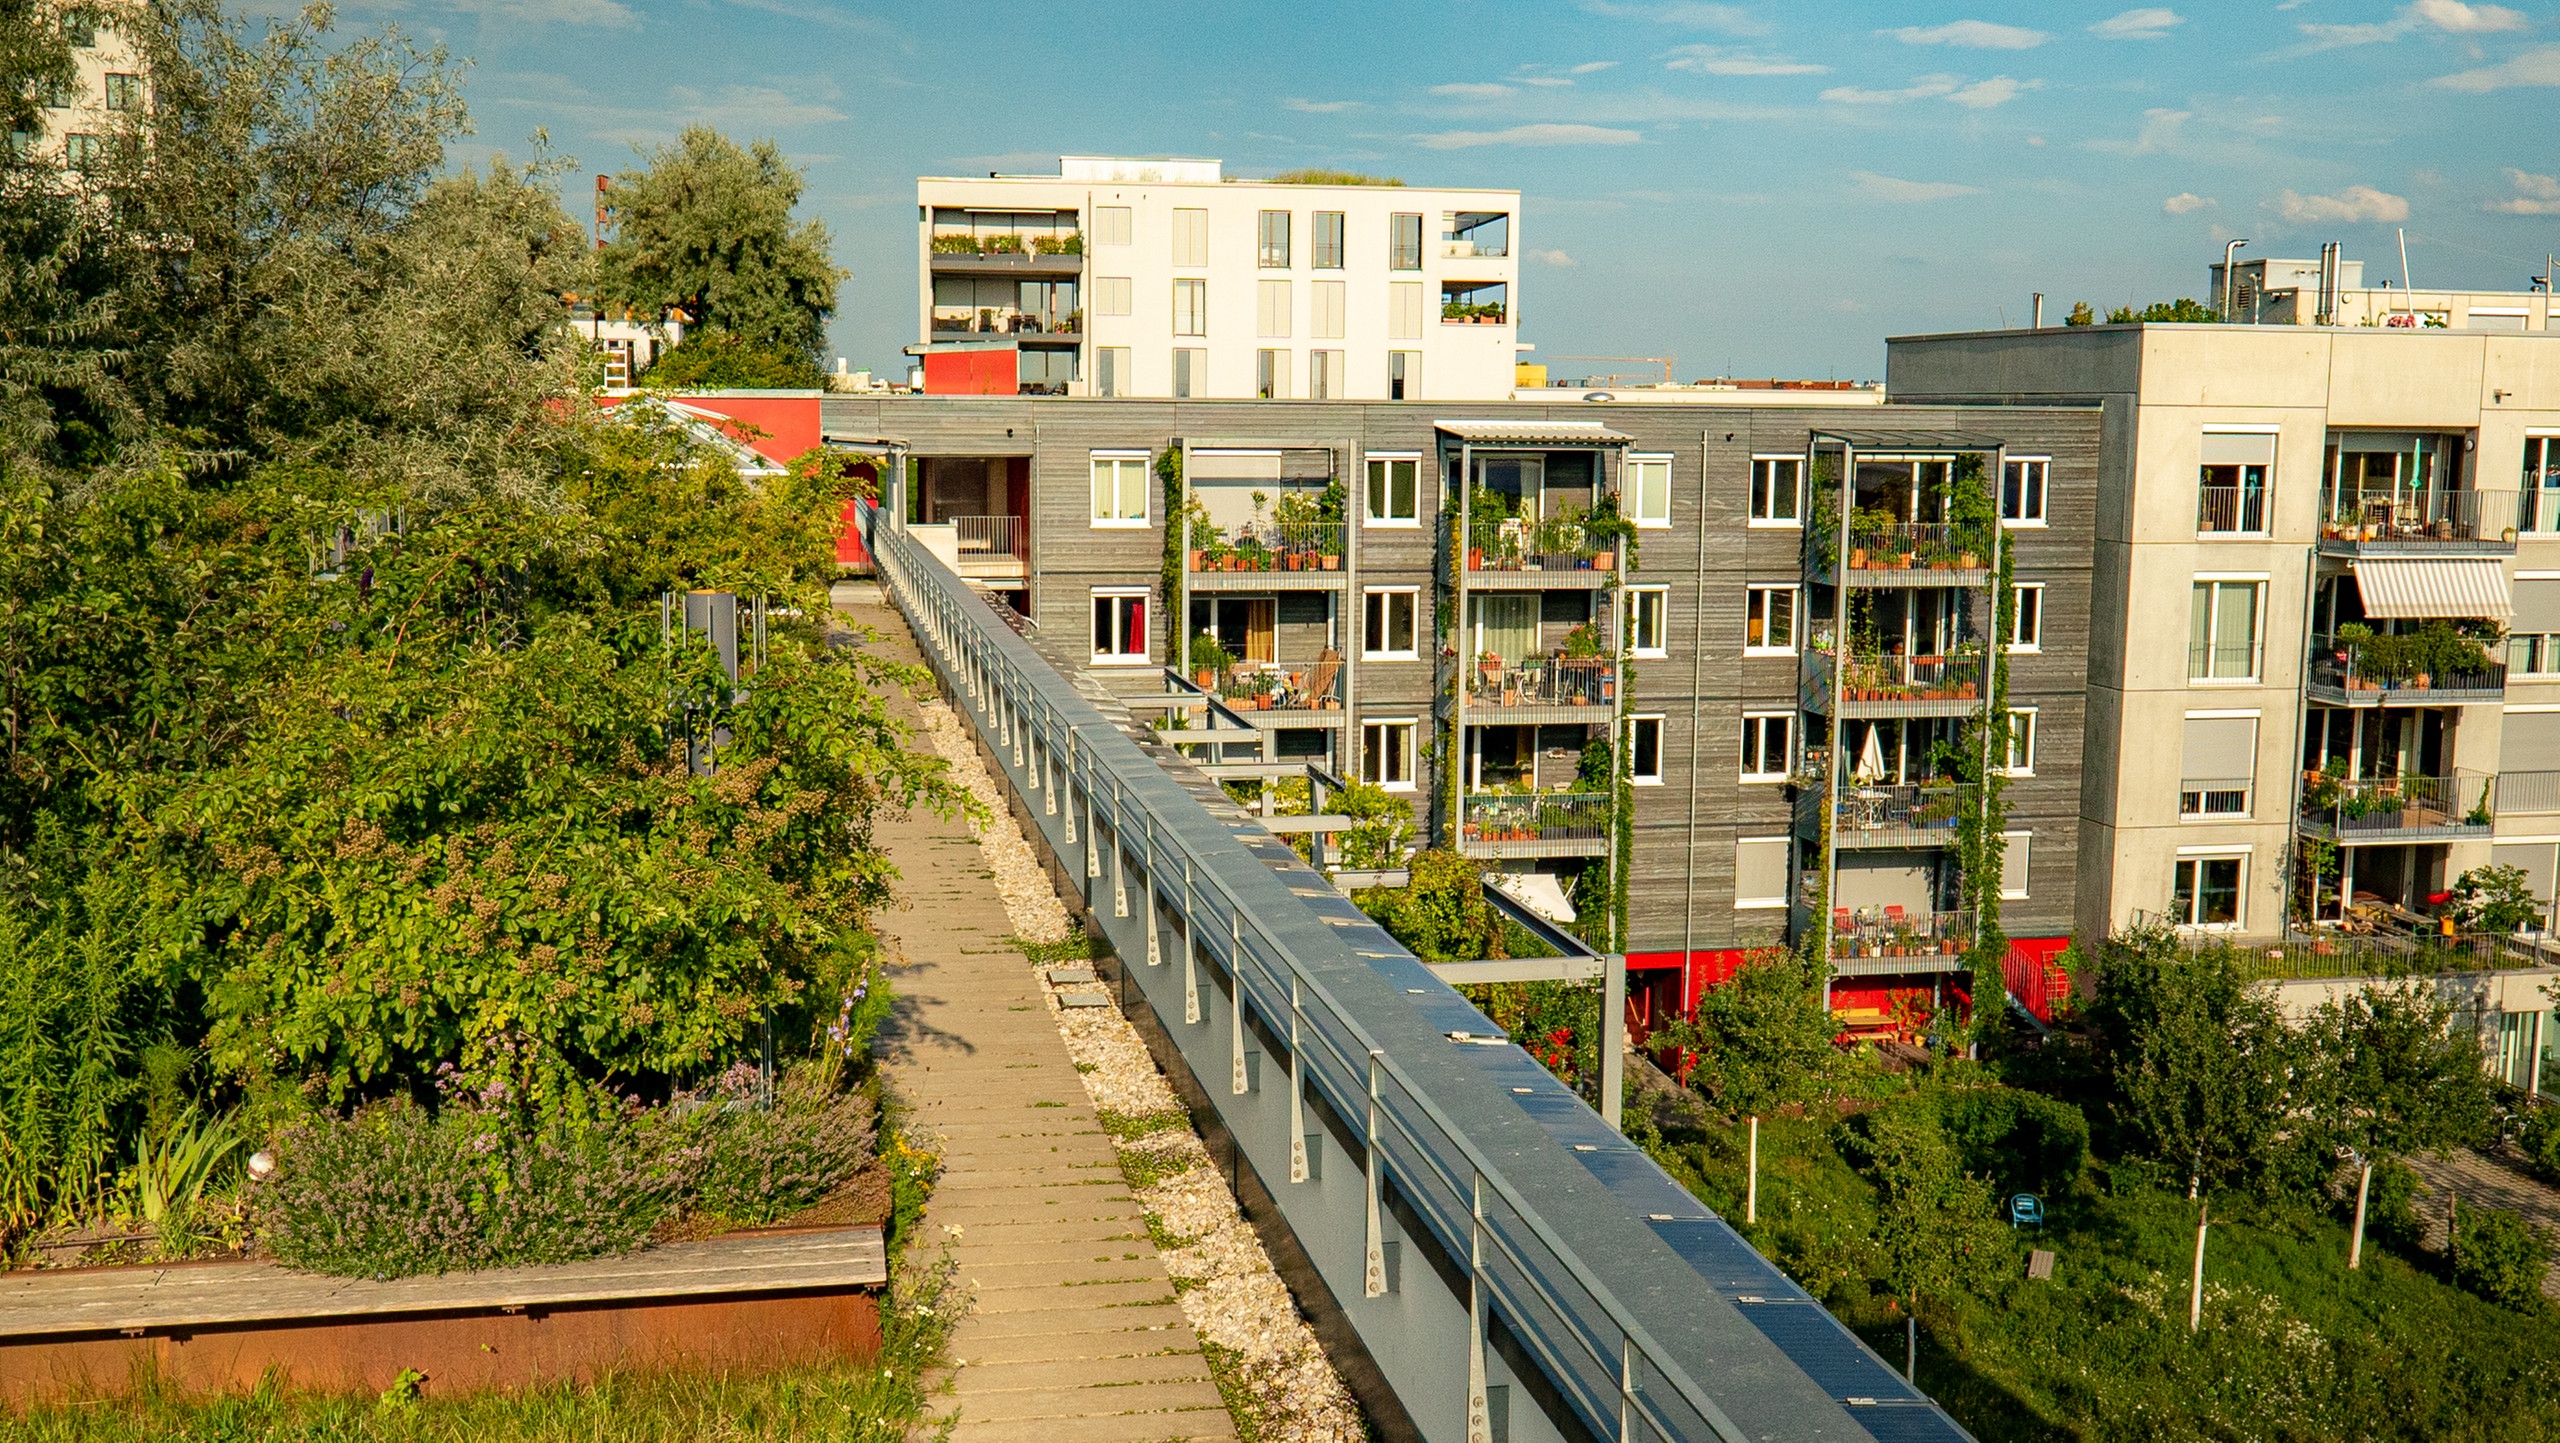 Dachgärten bringen ein Stück Natur zurück in die Stadt | Bild: André Goerschel